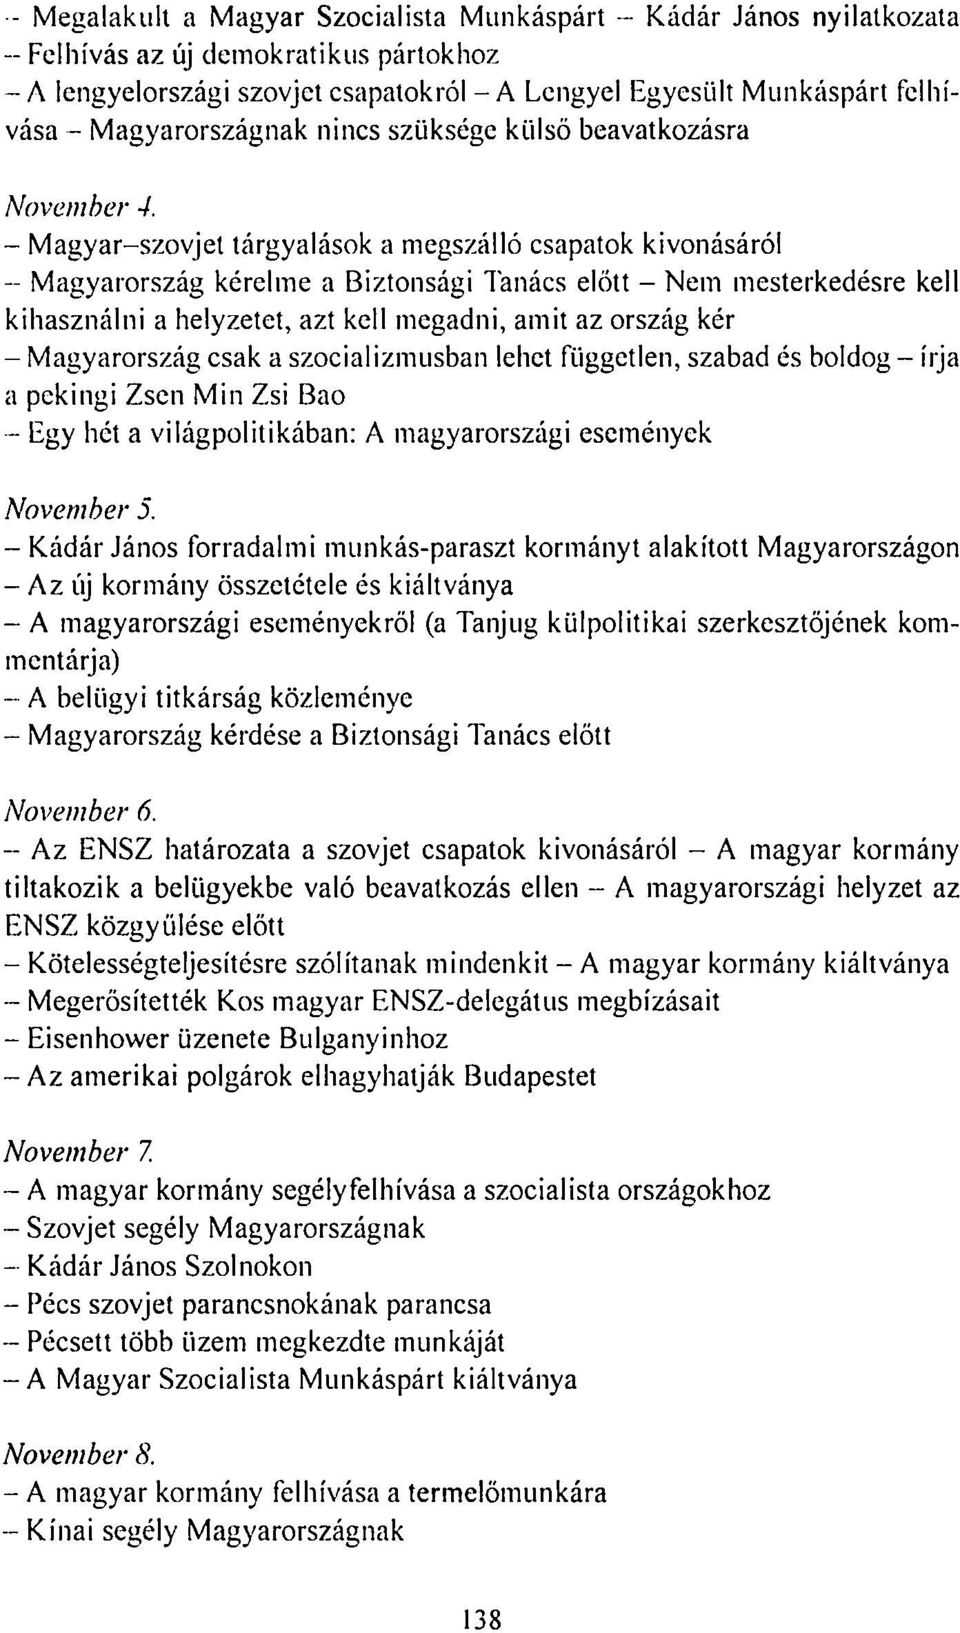 - Magyar-szovjet tárgyalások a megszálló csapatok kivonásáról - Magyarország kérelme a Biztonsági Tanács előtt - Nem mesterkedésre kell kihasználni a helyzetet, azt kell megadni, amit az ország kér -